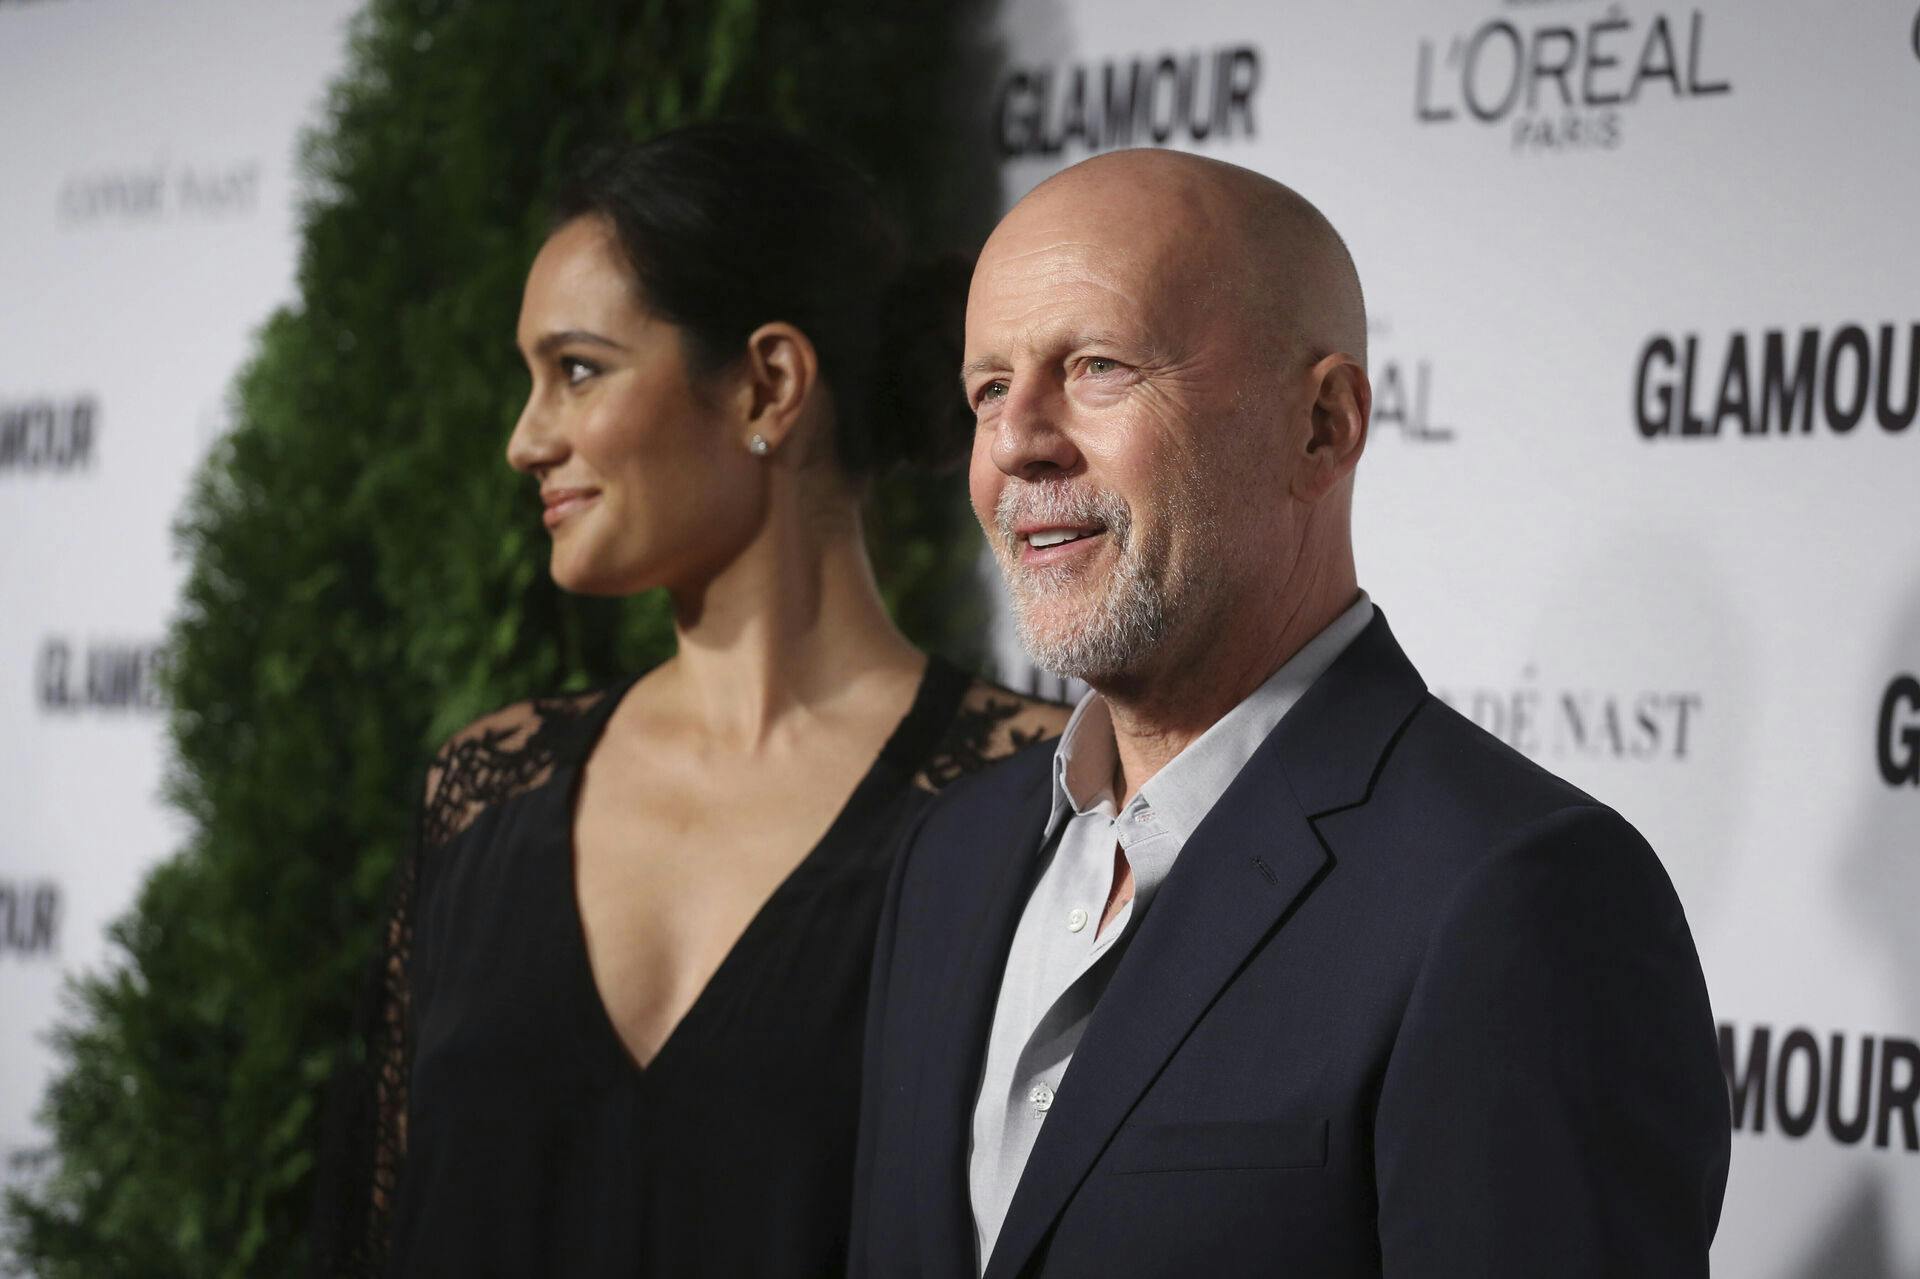 Familien til Bruce Willis meddelte sidste år, at han stopper karrieren grundet alvorlig sygdom.